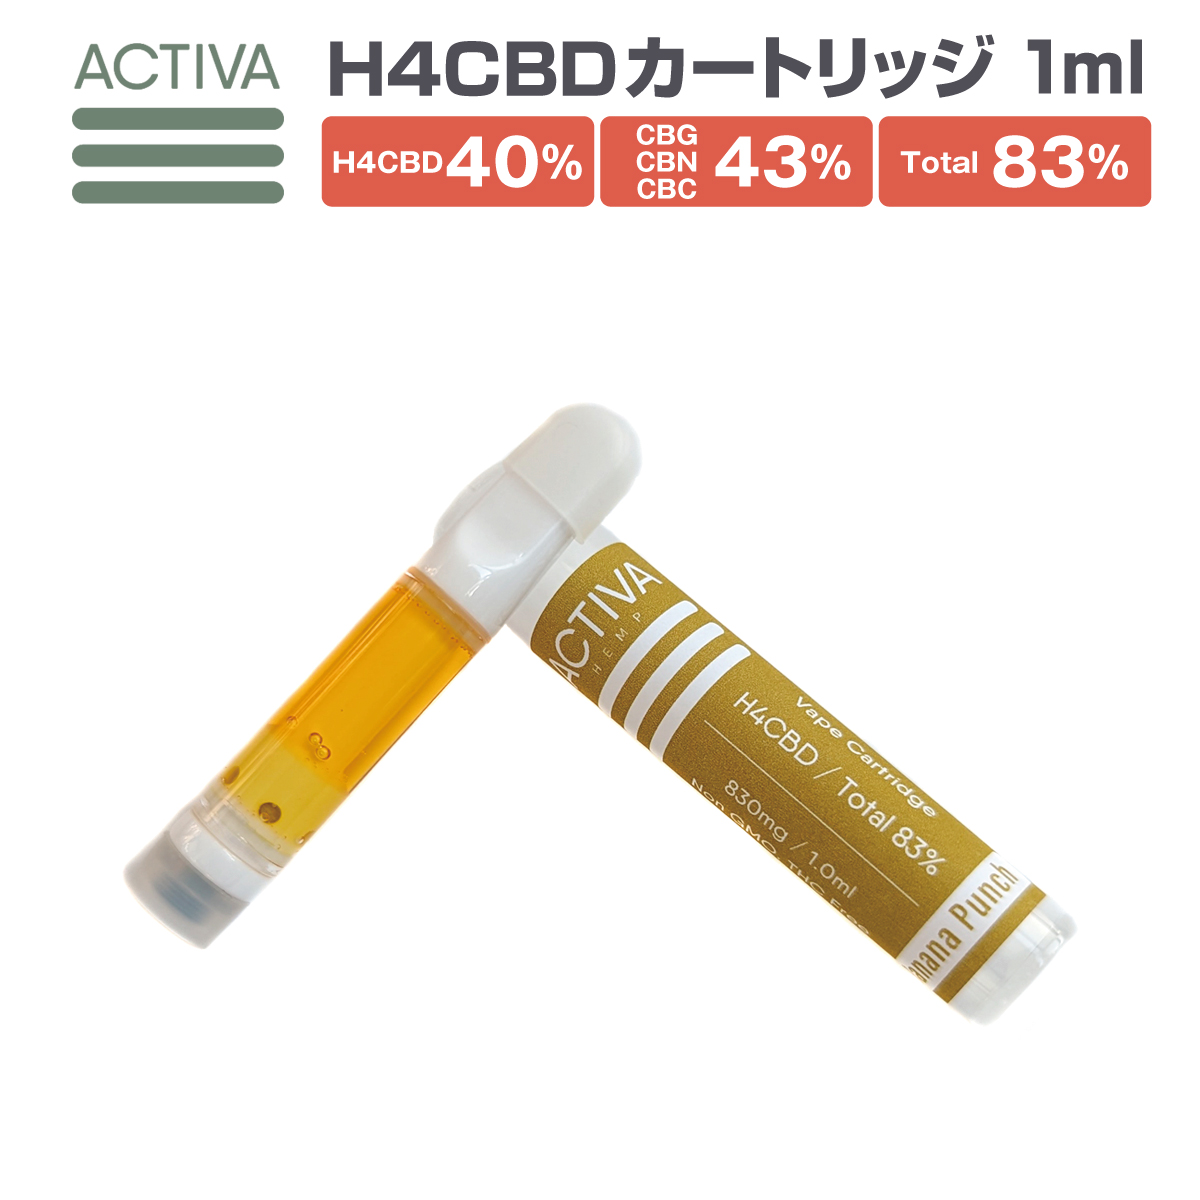 【楽天市場】H4CBD リキッド カートリッジ 1ml 高濃度83% H4 